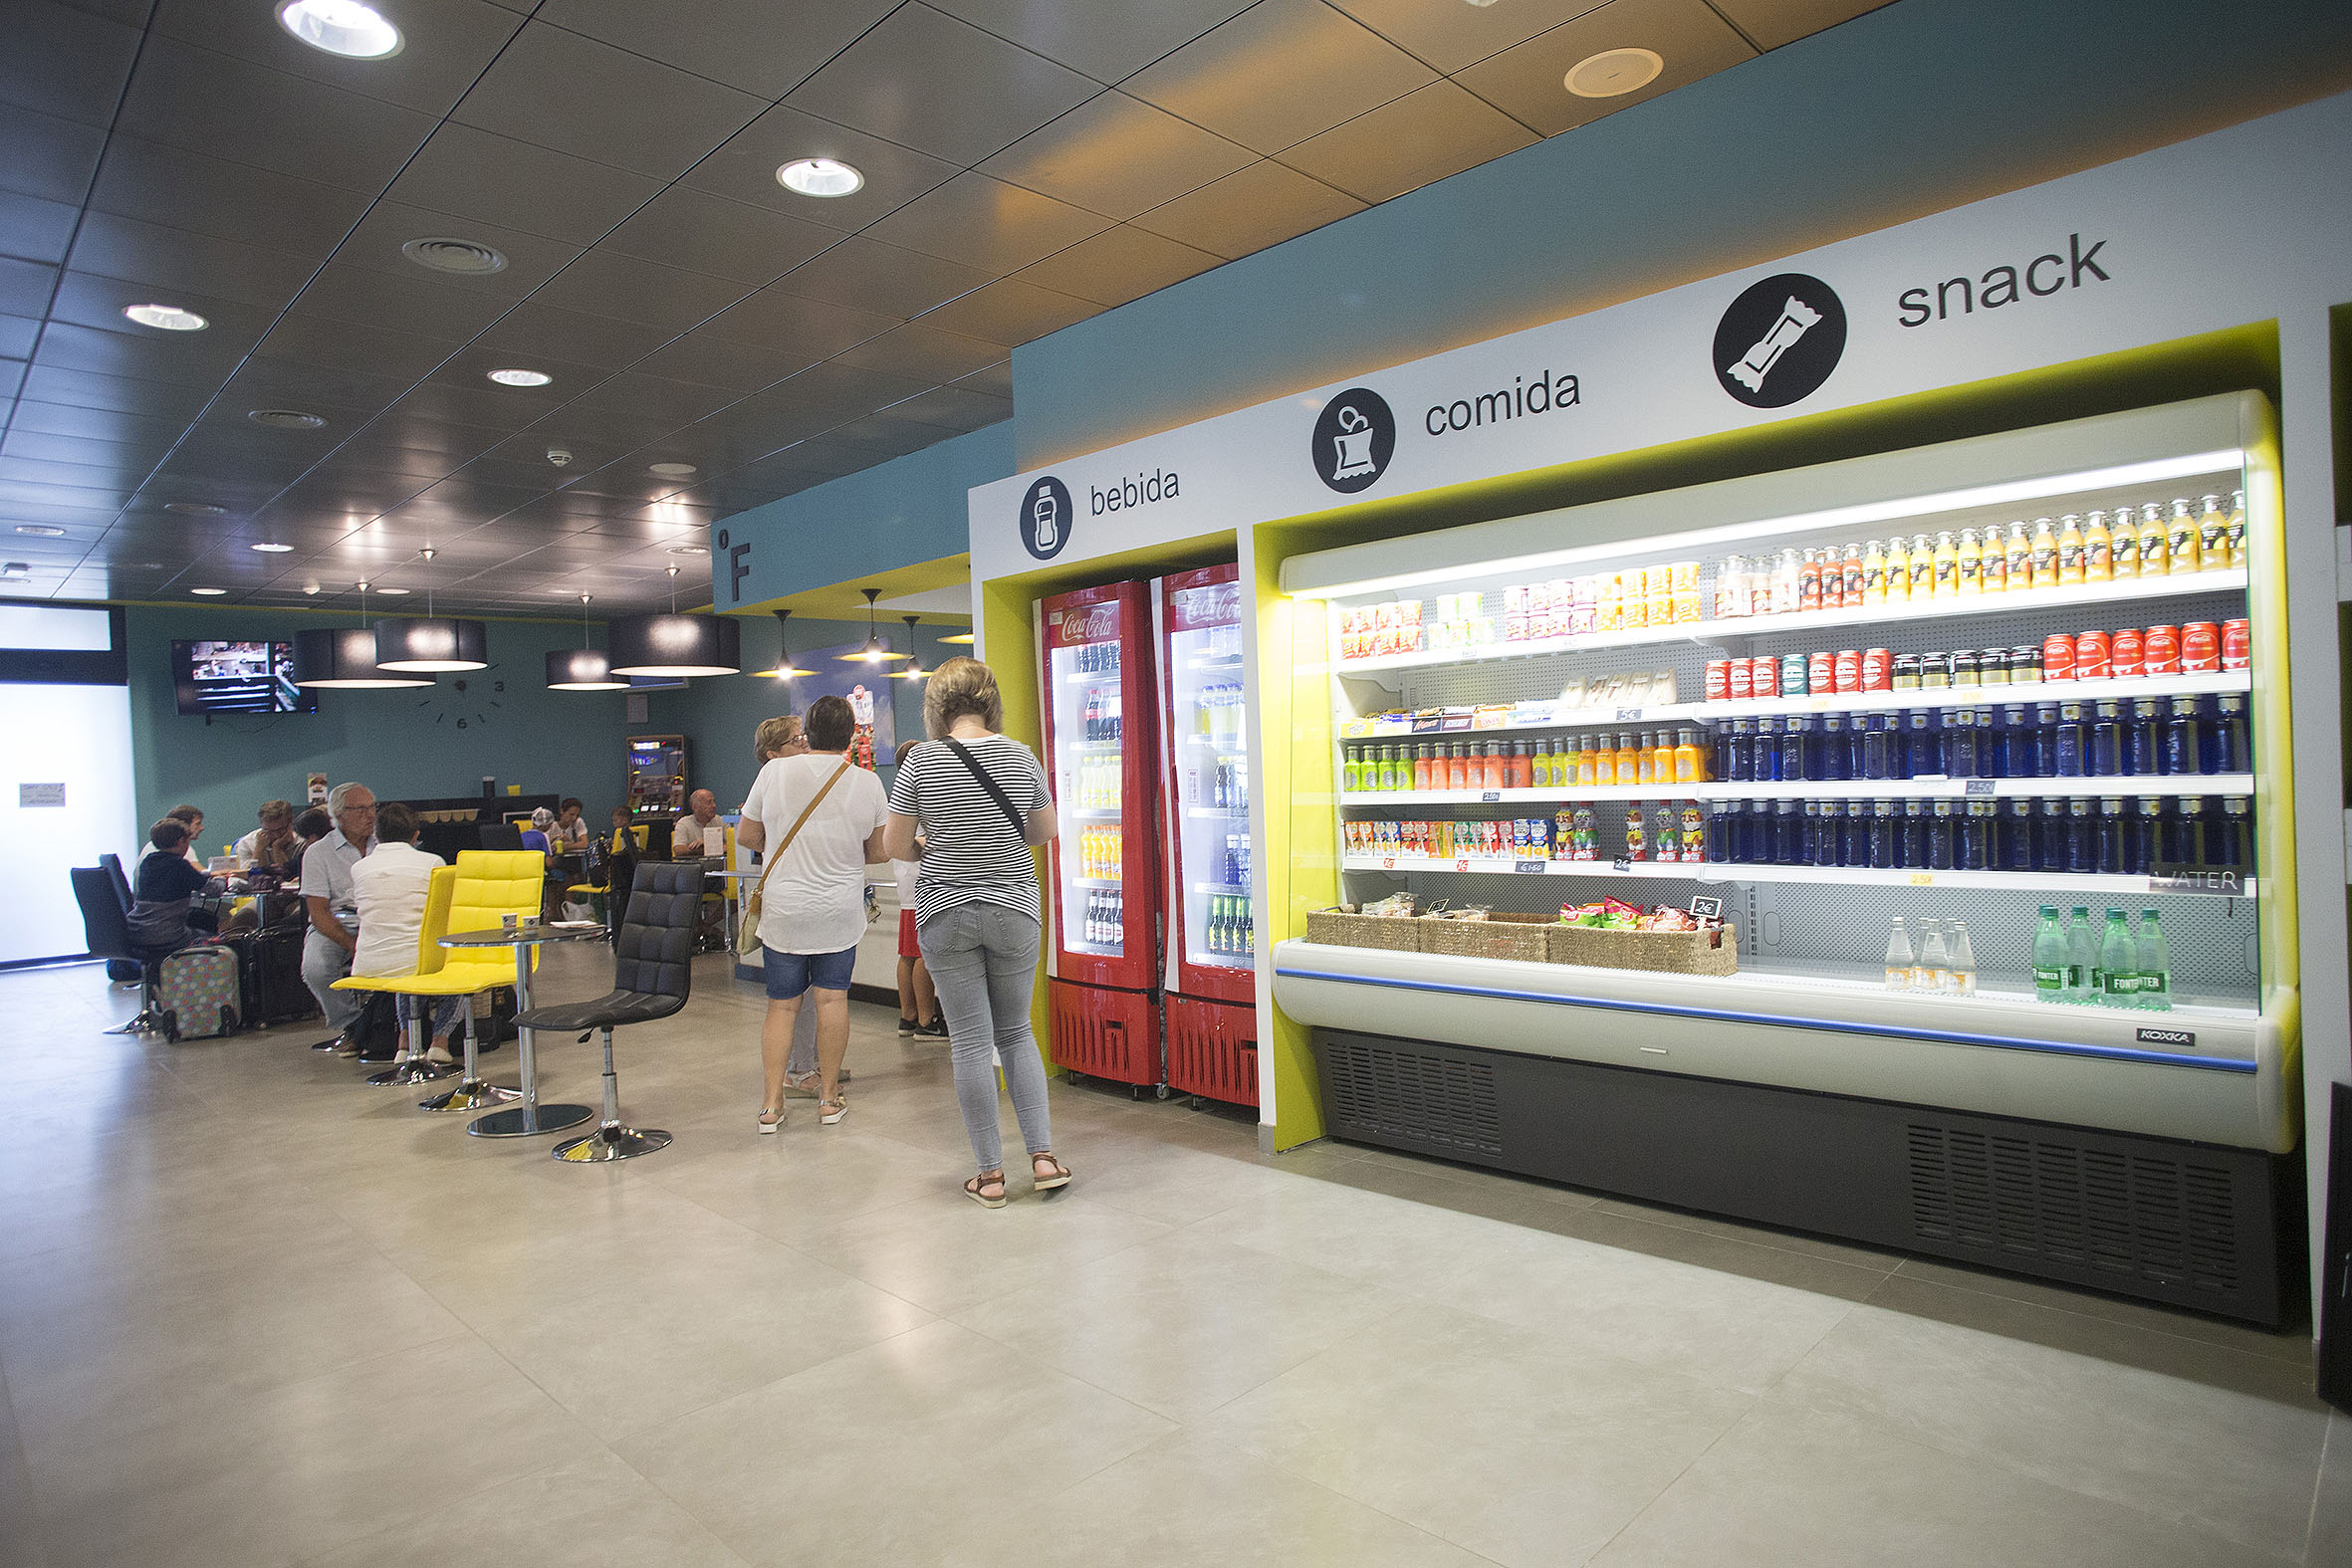 El aeropuerto de Castellón licita la explotación de una segunda cafetería  para dar respuesta al incremento de pasajeros - Aeroport Castelló